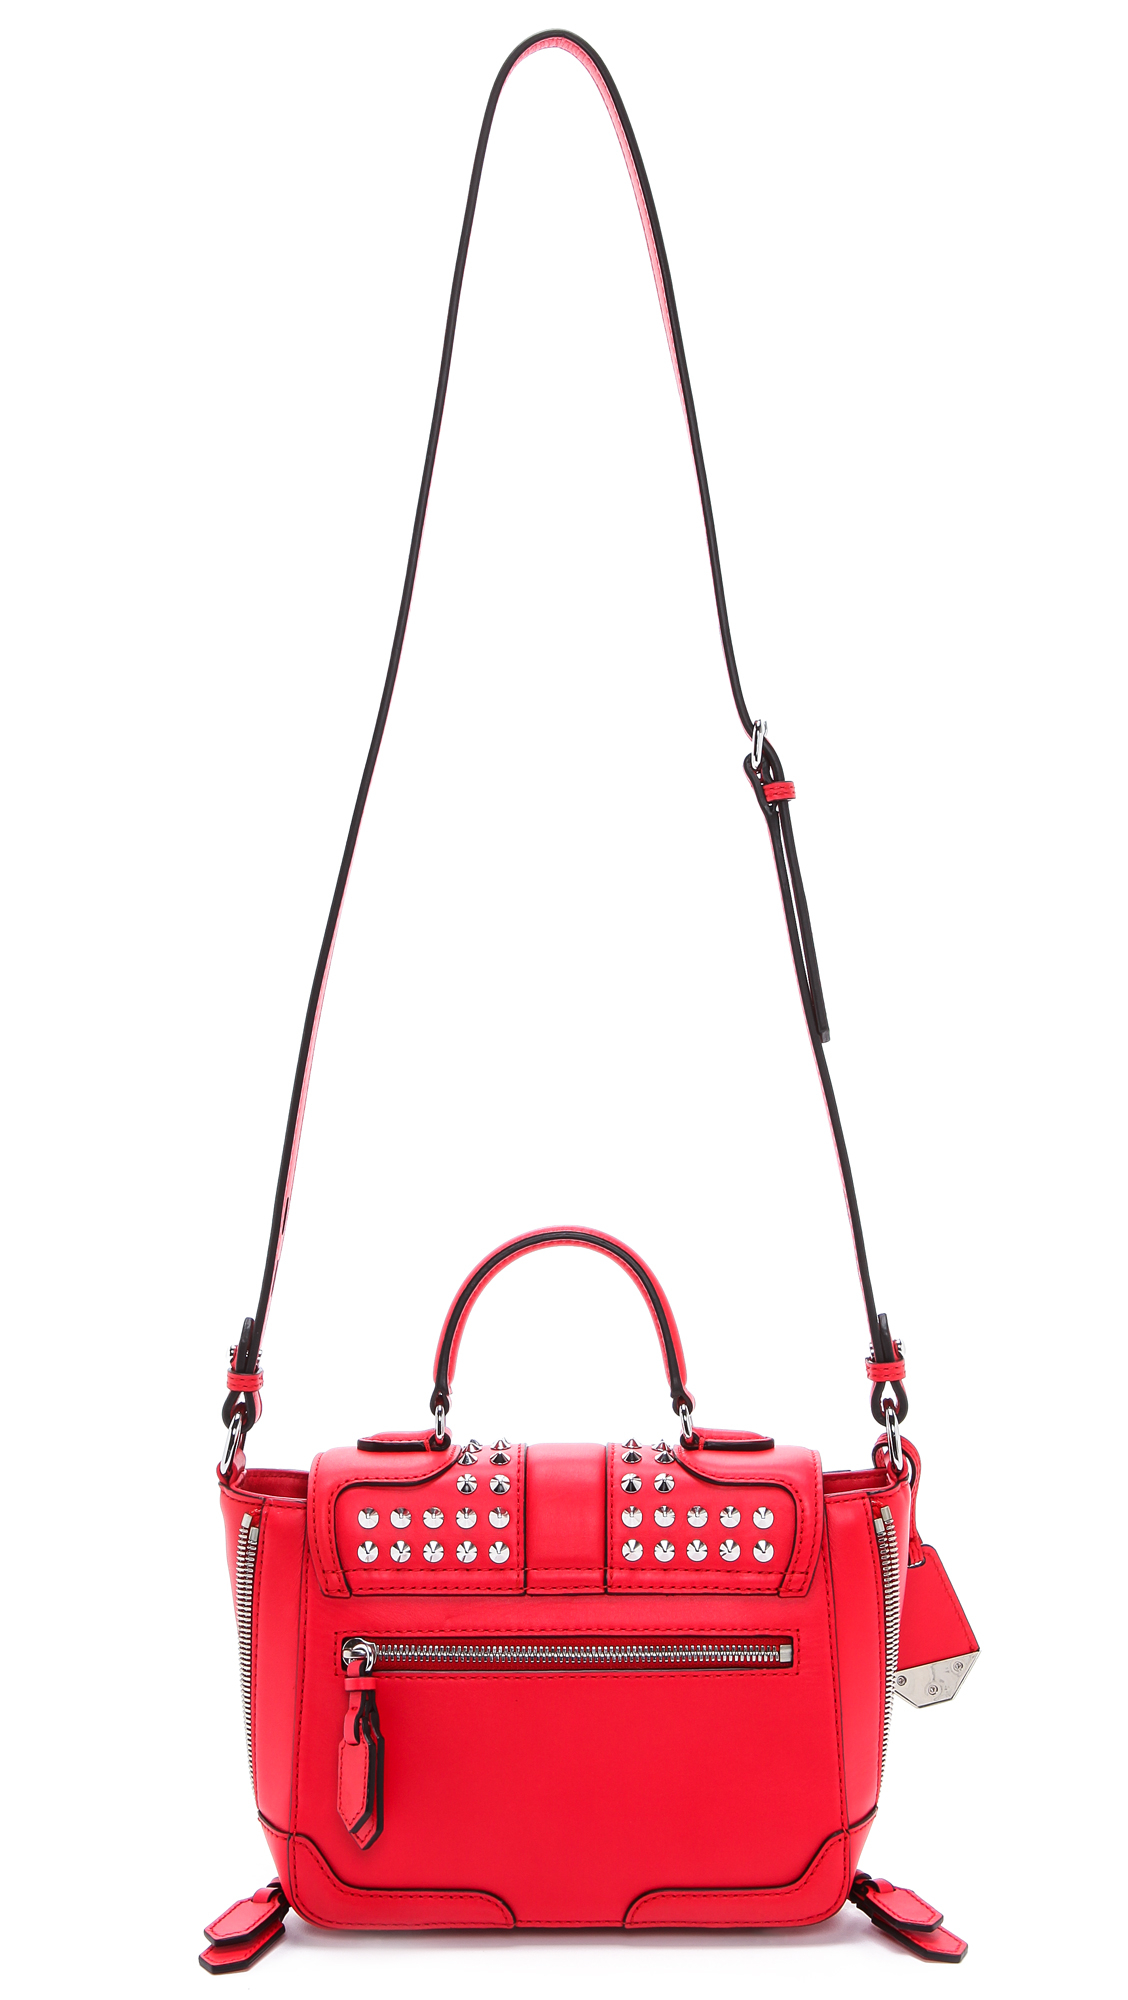 Rebecca Minkoff Elle Mini Shoulder Bag in Hot Red (Red) - Lyst